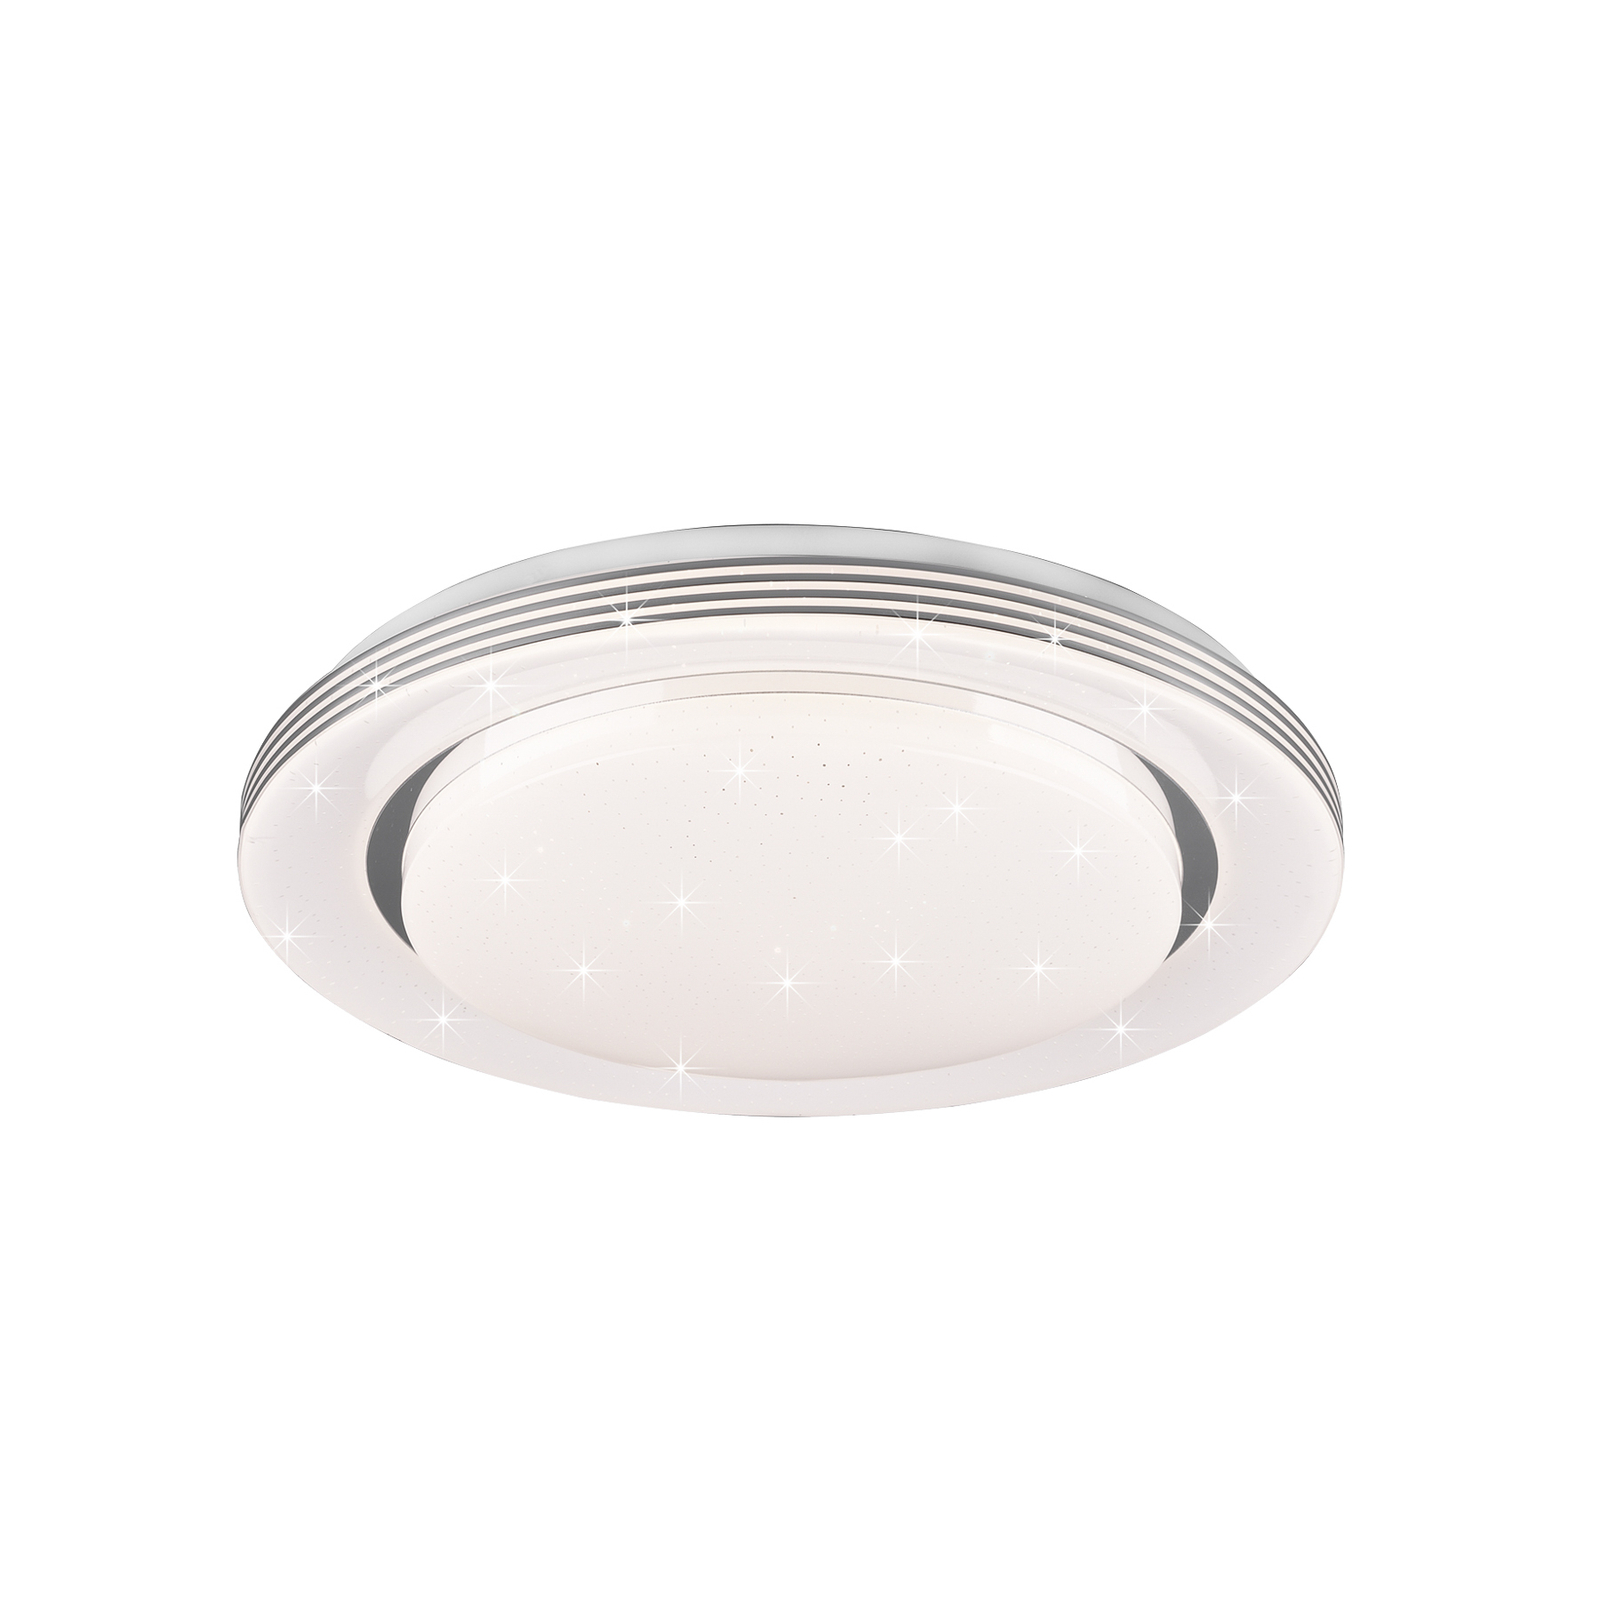 LED stropní svítidlo Atria, Ø 38 cm, bílé, plast, CCT